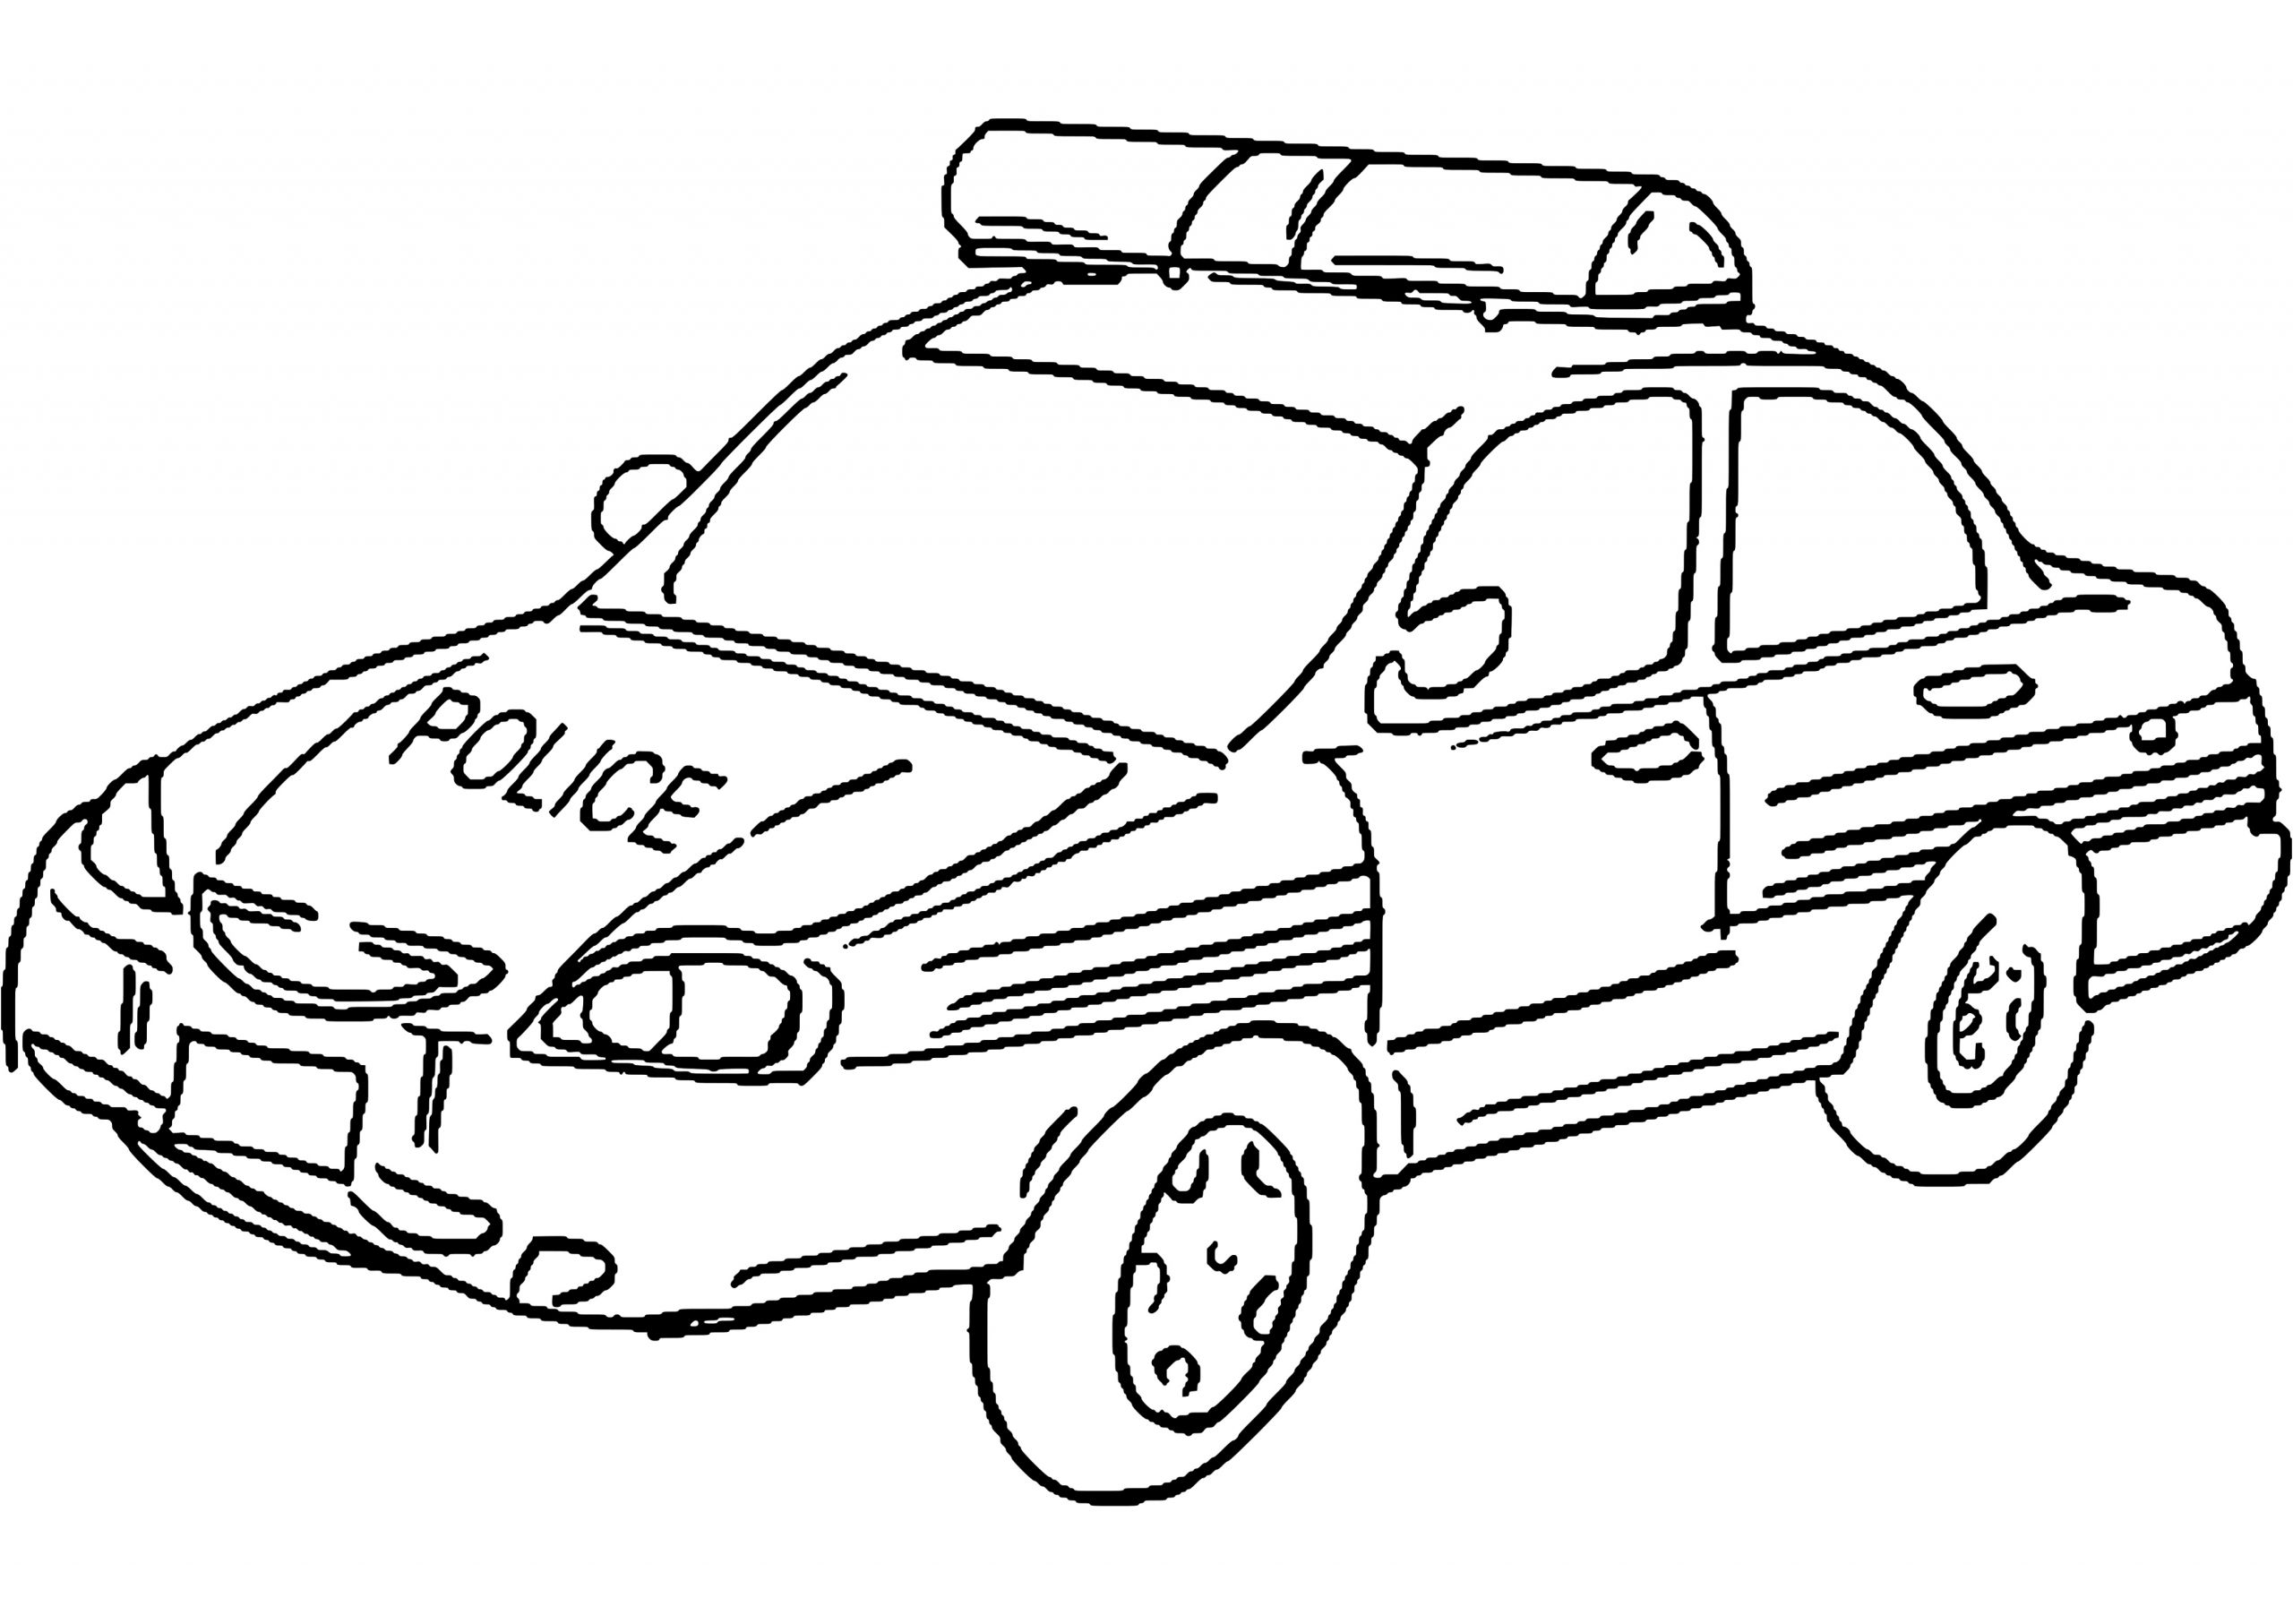 voiture de police 10 transport coloriages a imprimer serapportanta coloriage voiture police